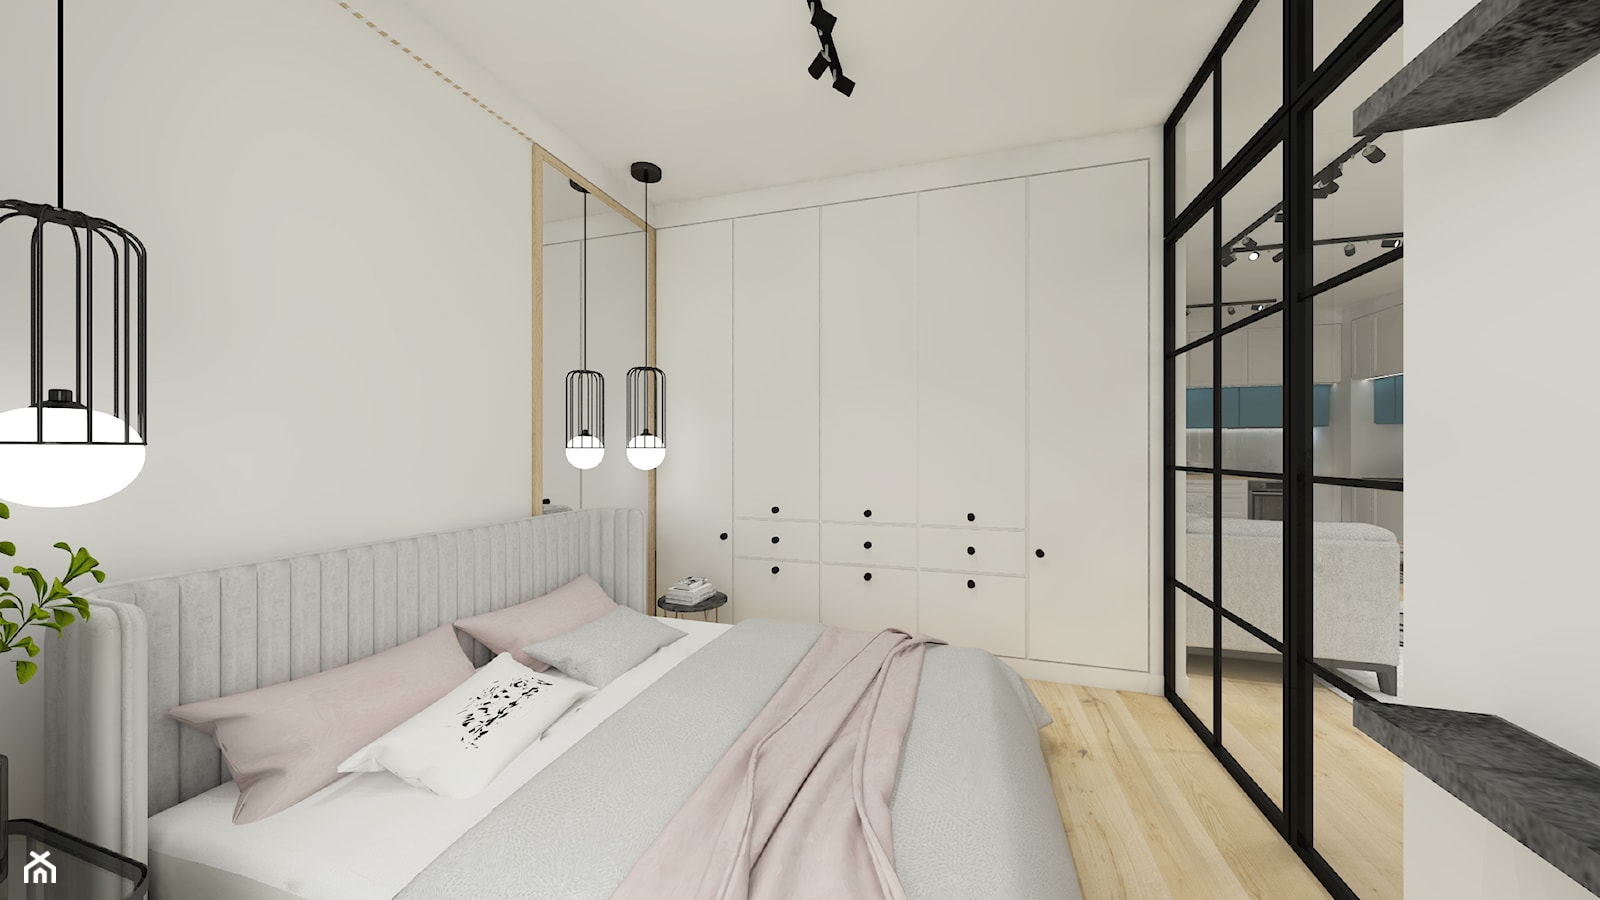 Apartament w stylu loftowym - Sypialnia, styl skandynawski - zdjęcie od Gama Design - Homebook